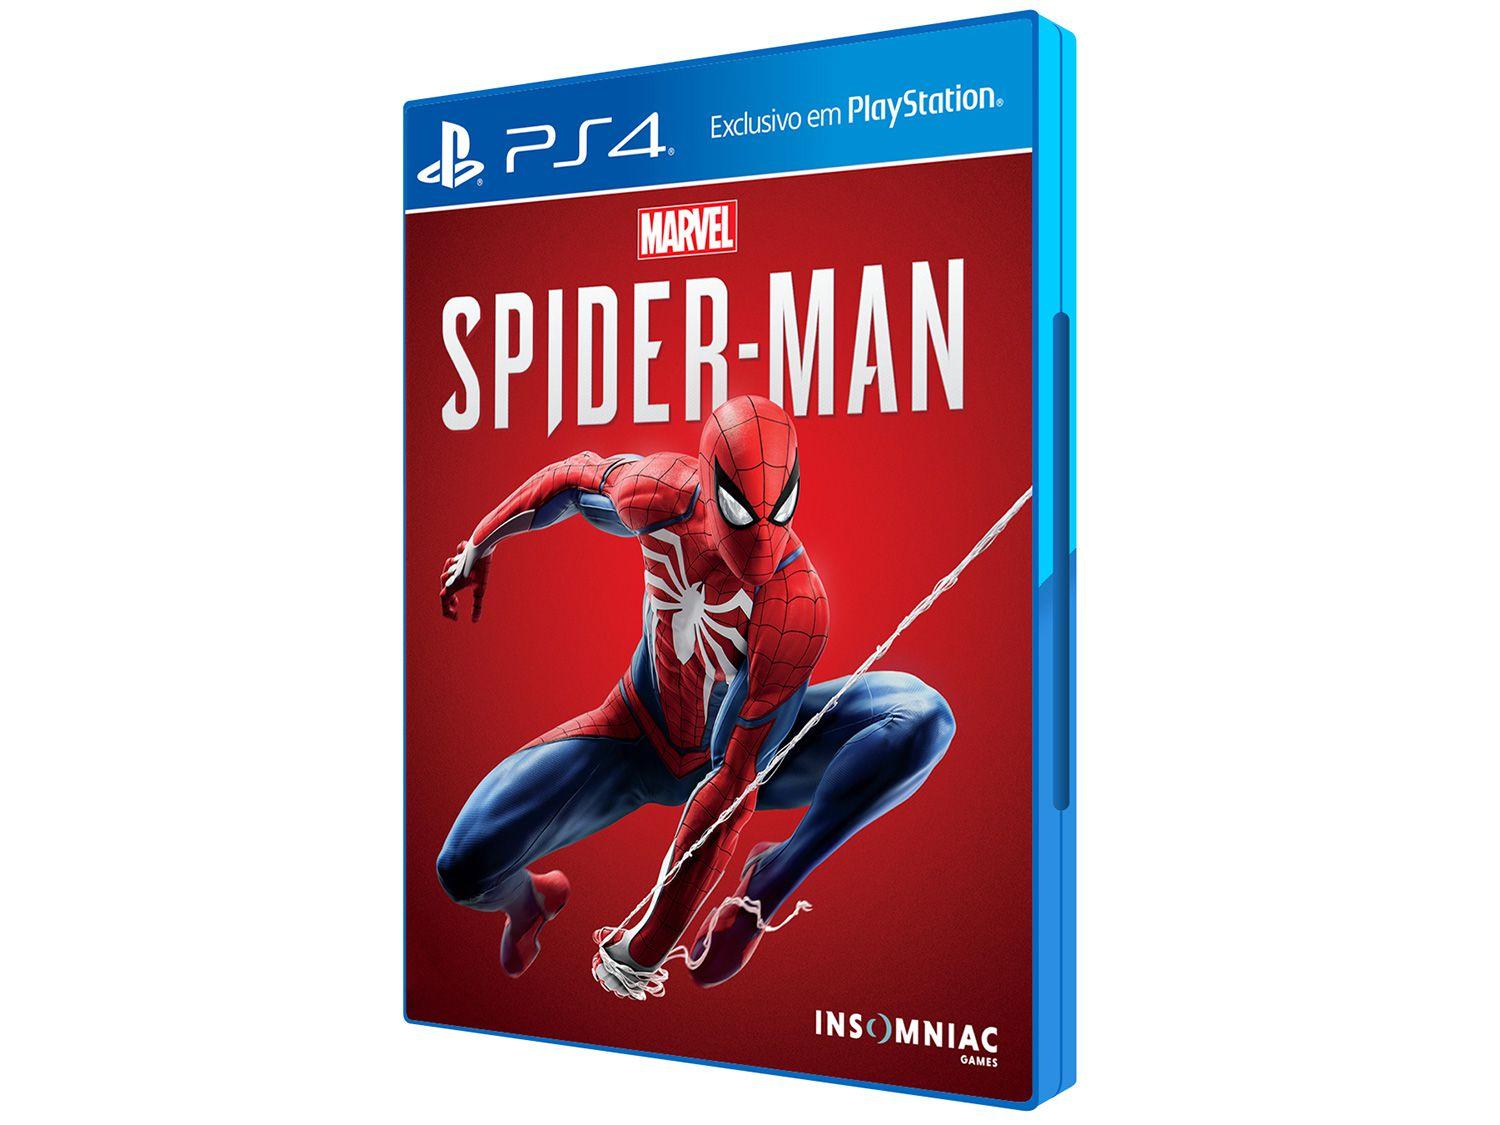 Паук на плейстейшен 4. Человек паук плейстейшен 4. Человек паук специальное издание ps4. Человек-паук на Sony PLAYSTATION пять.